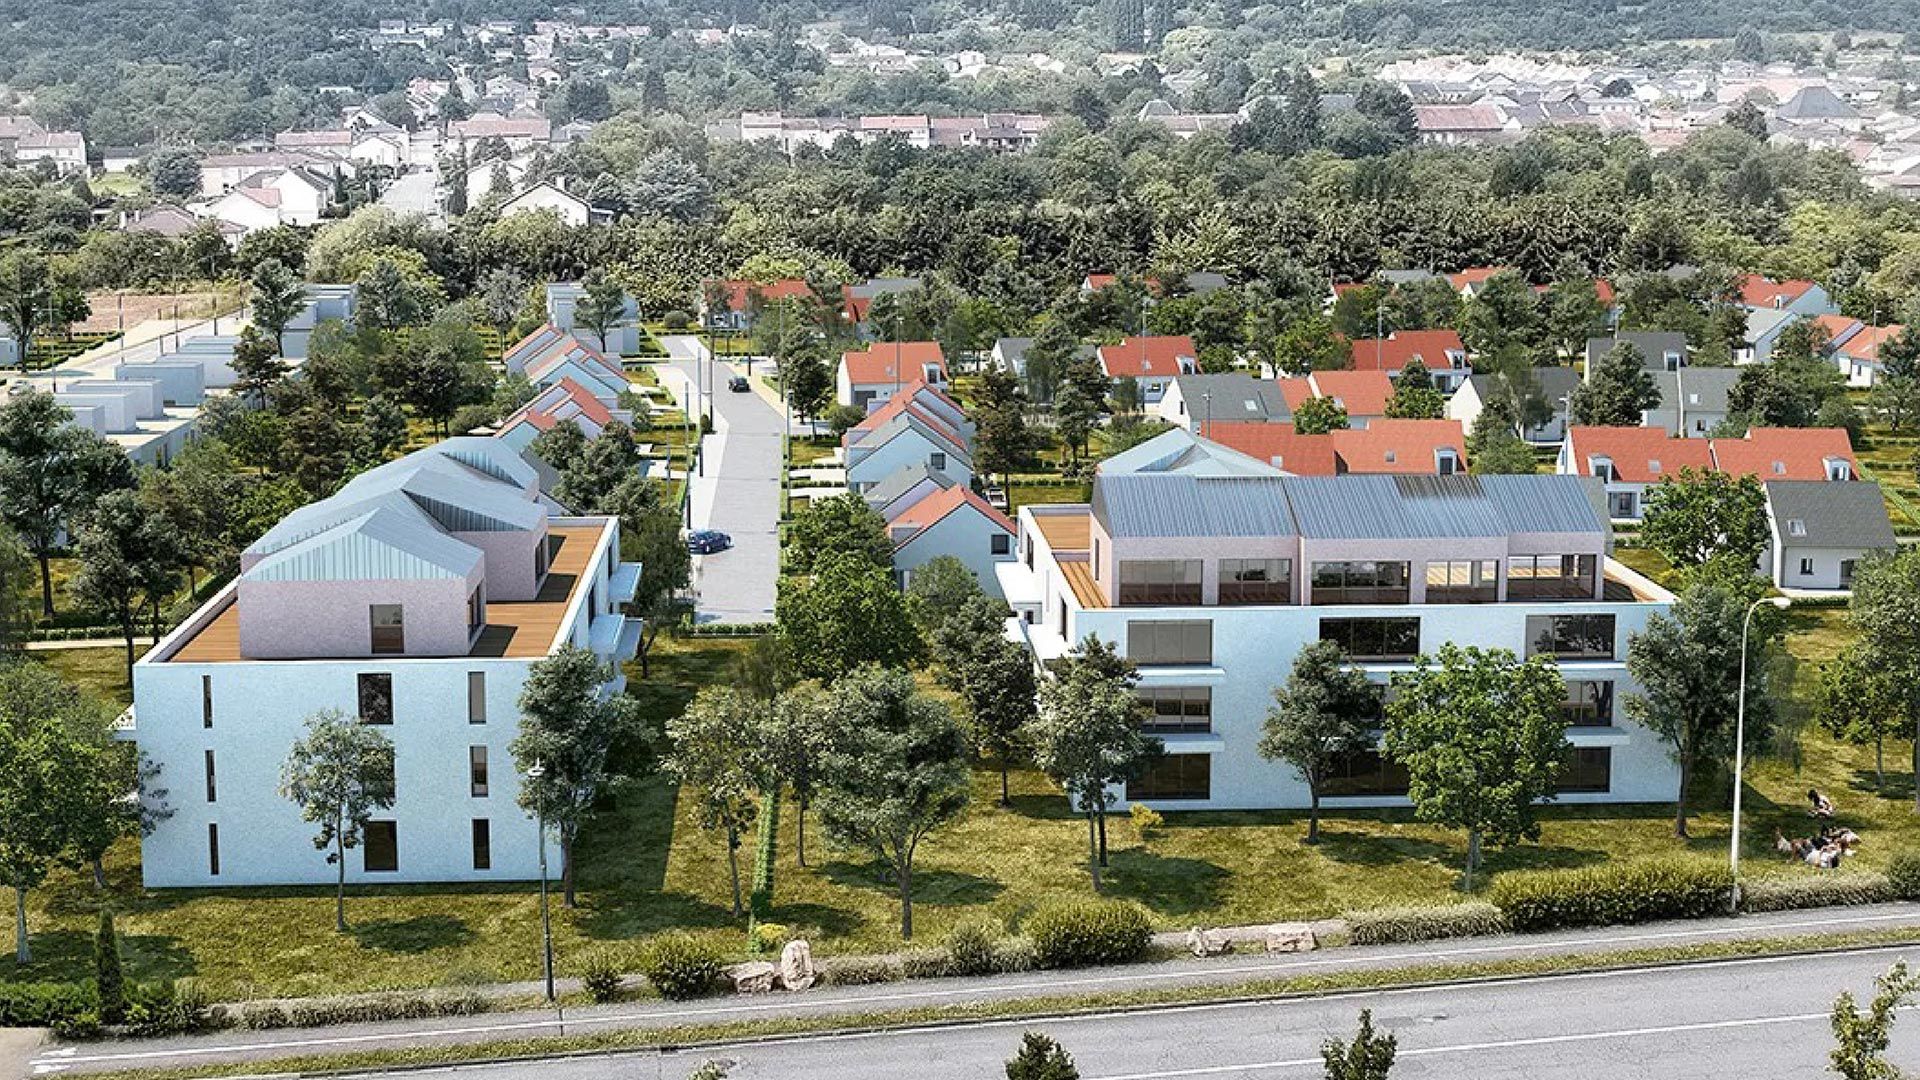 Concept Immobilier - ZAC de la Feltière - Terrains à bâtir à Fameck - Vue extérieure